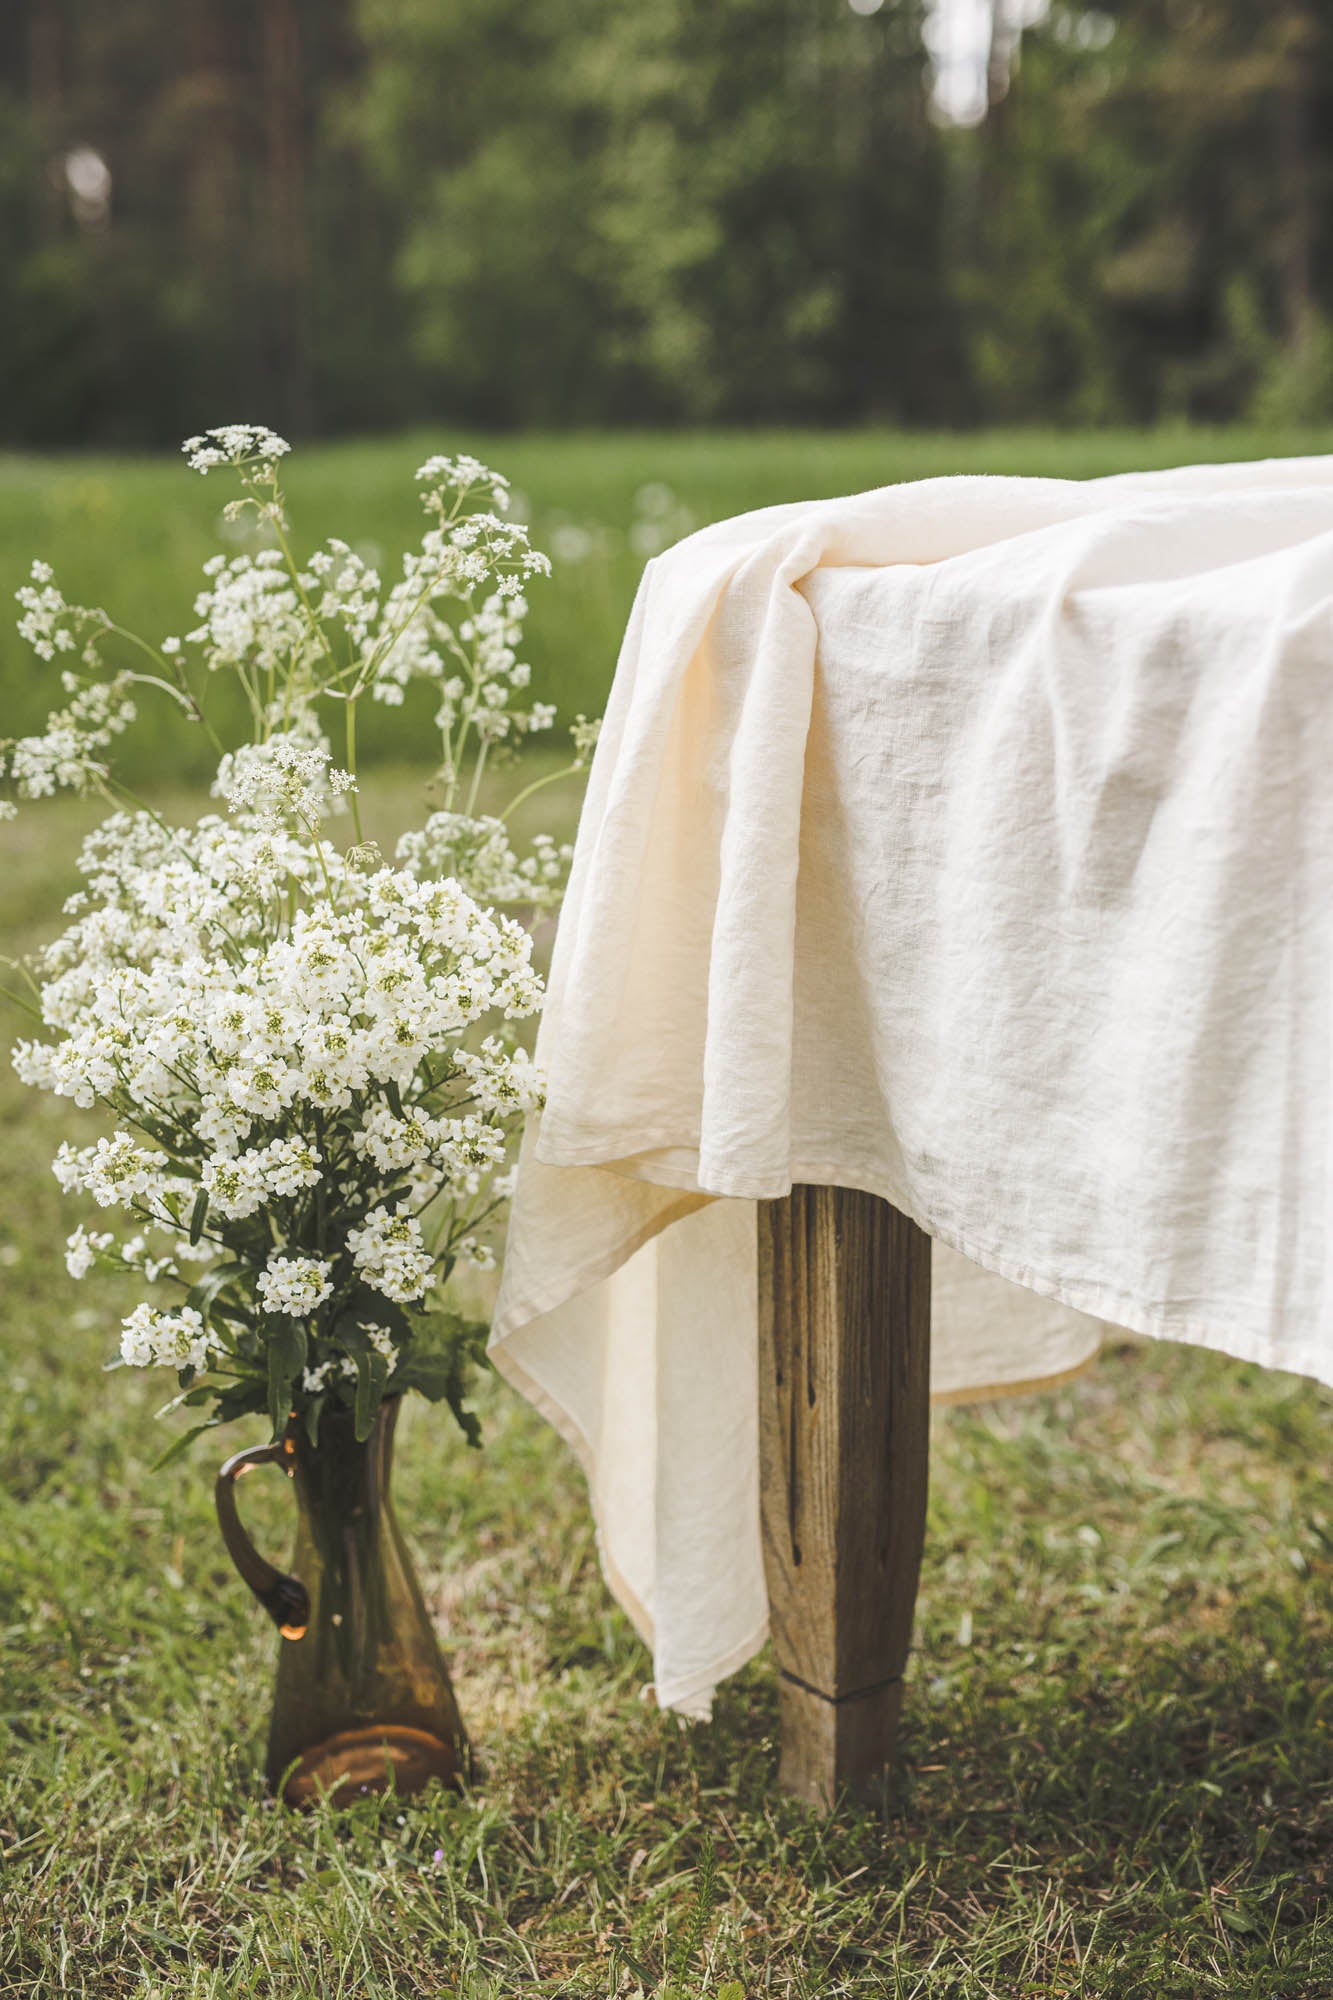 Cream linen tablecloth